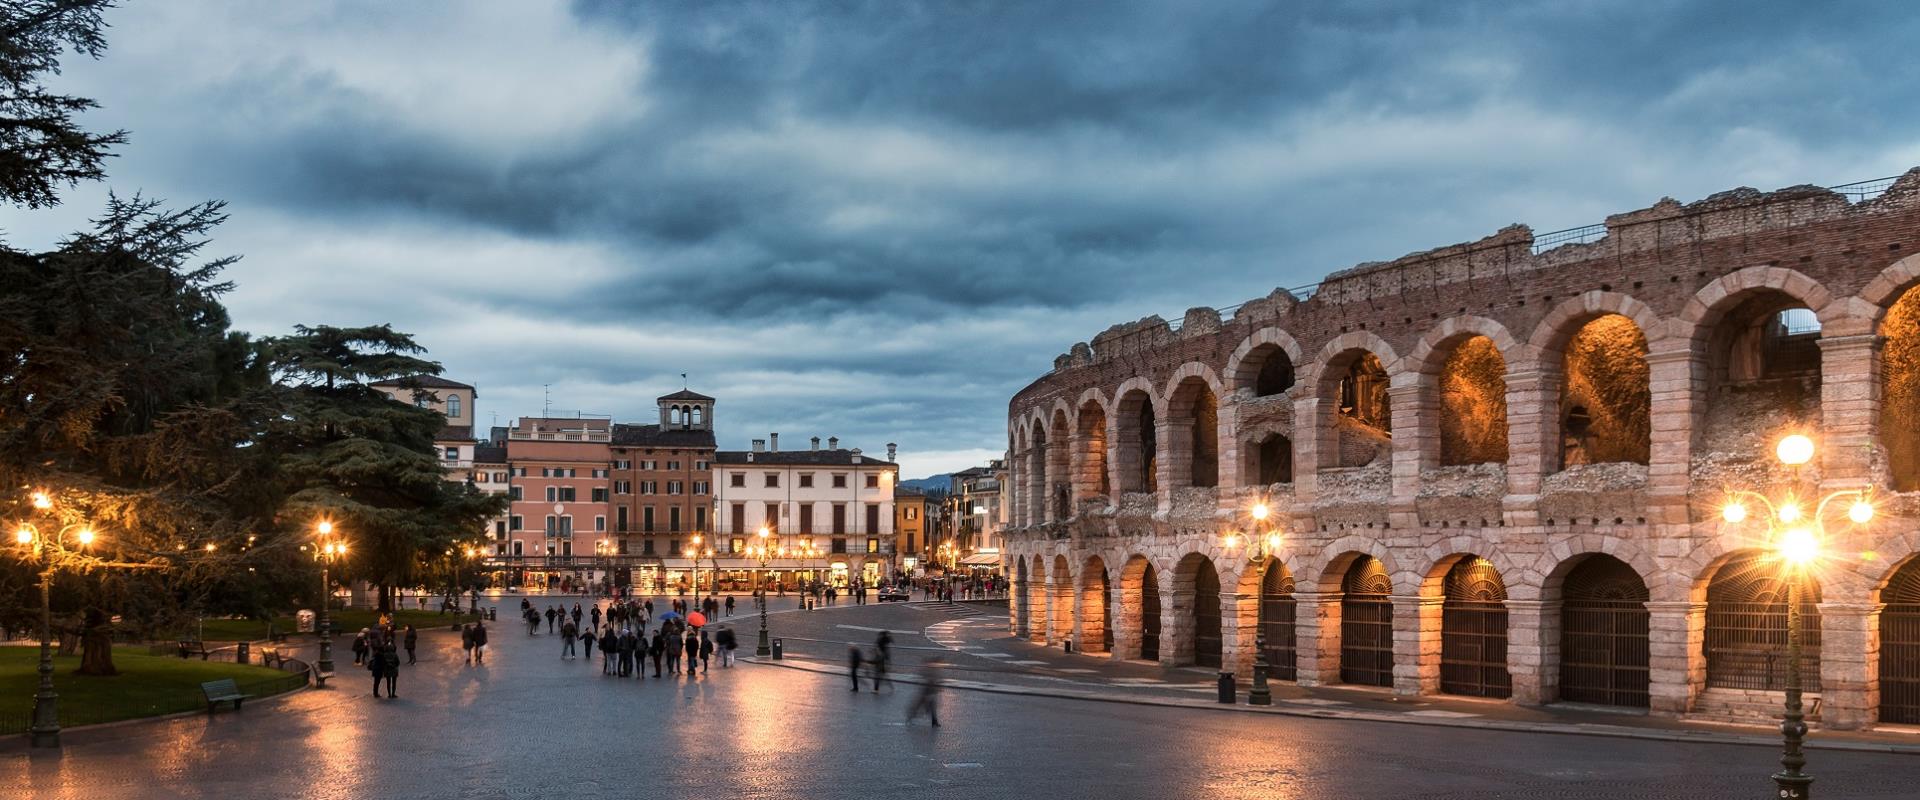 Scopri il centro storico di Verona, a pochi minuti dal nostro hotel!